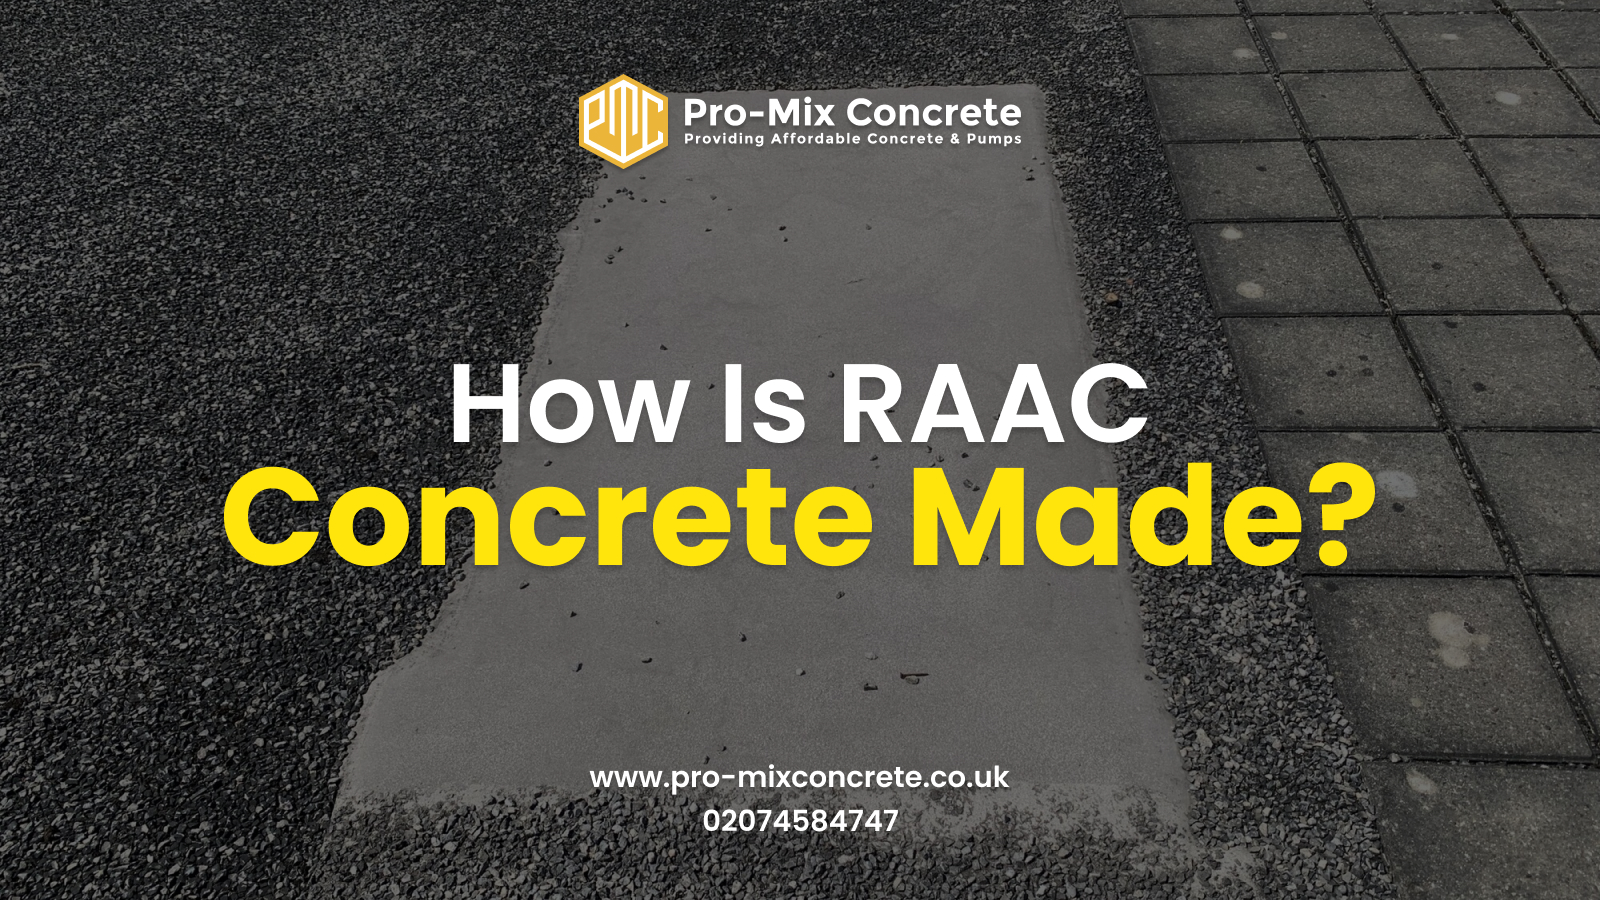 RAAC concrete